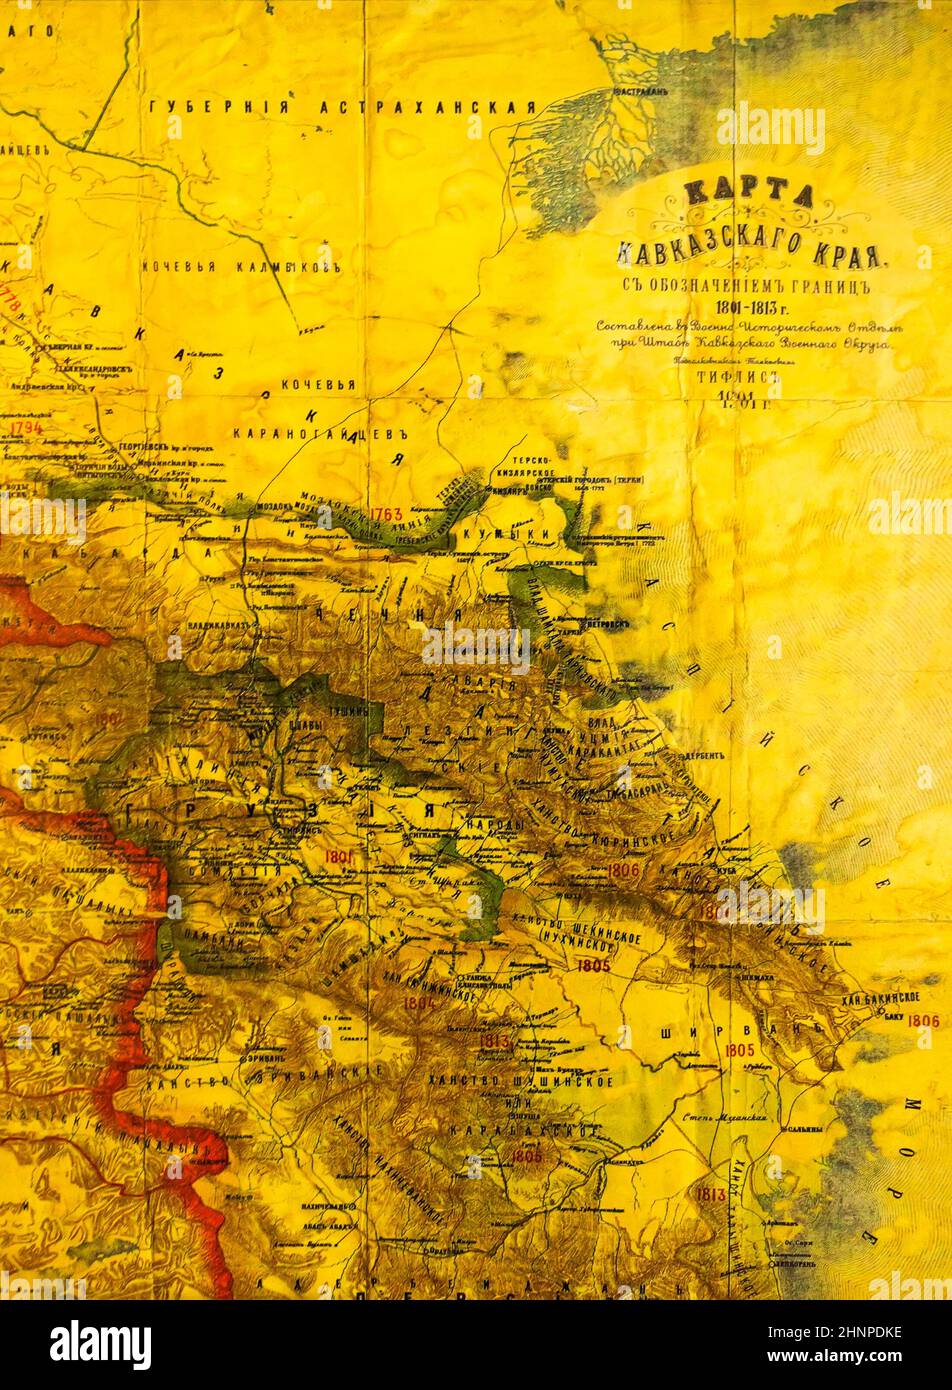 Map of the Caucasus region. Stock Photo